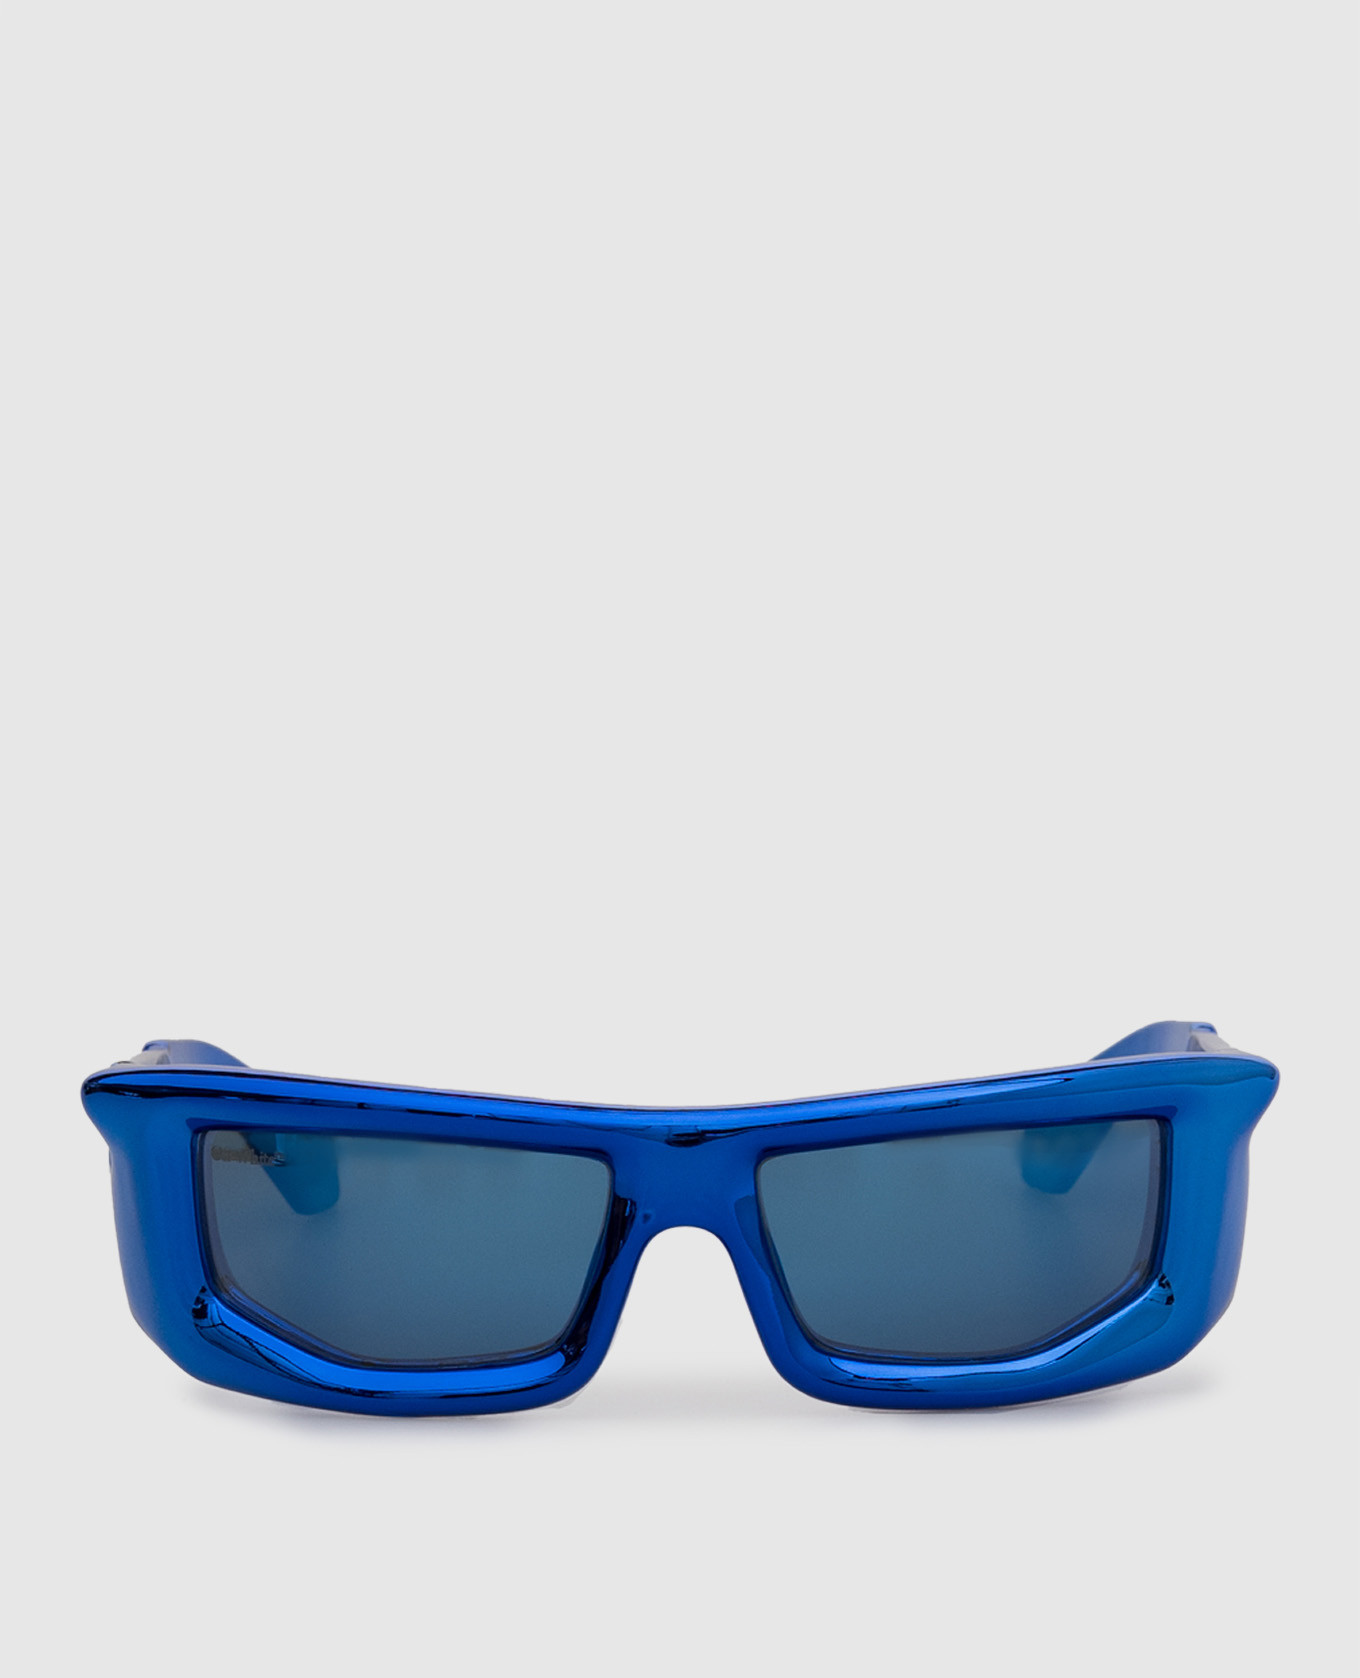 Vulkanitblaue Sonnenbrille mit Metallic-Effekt